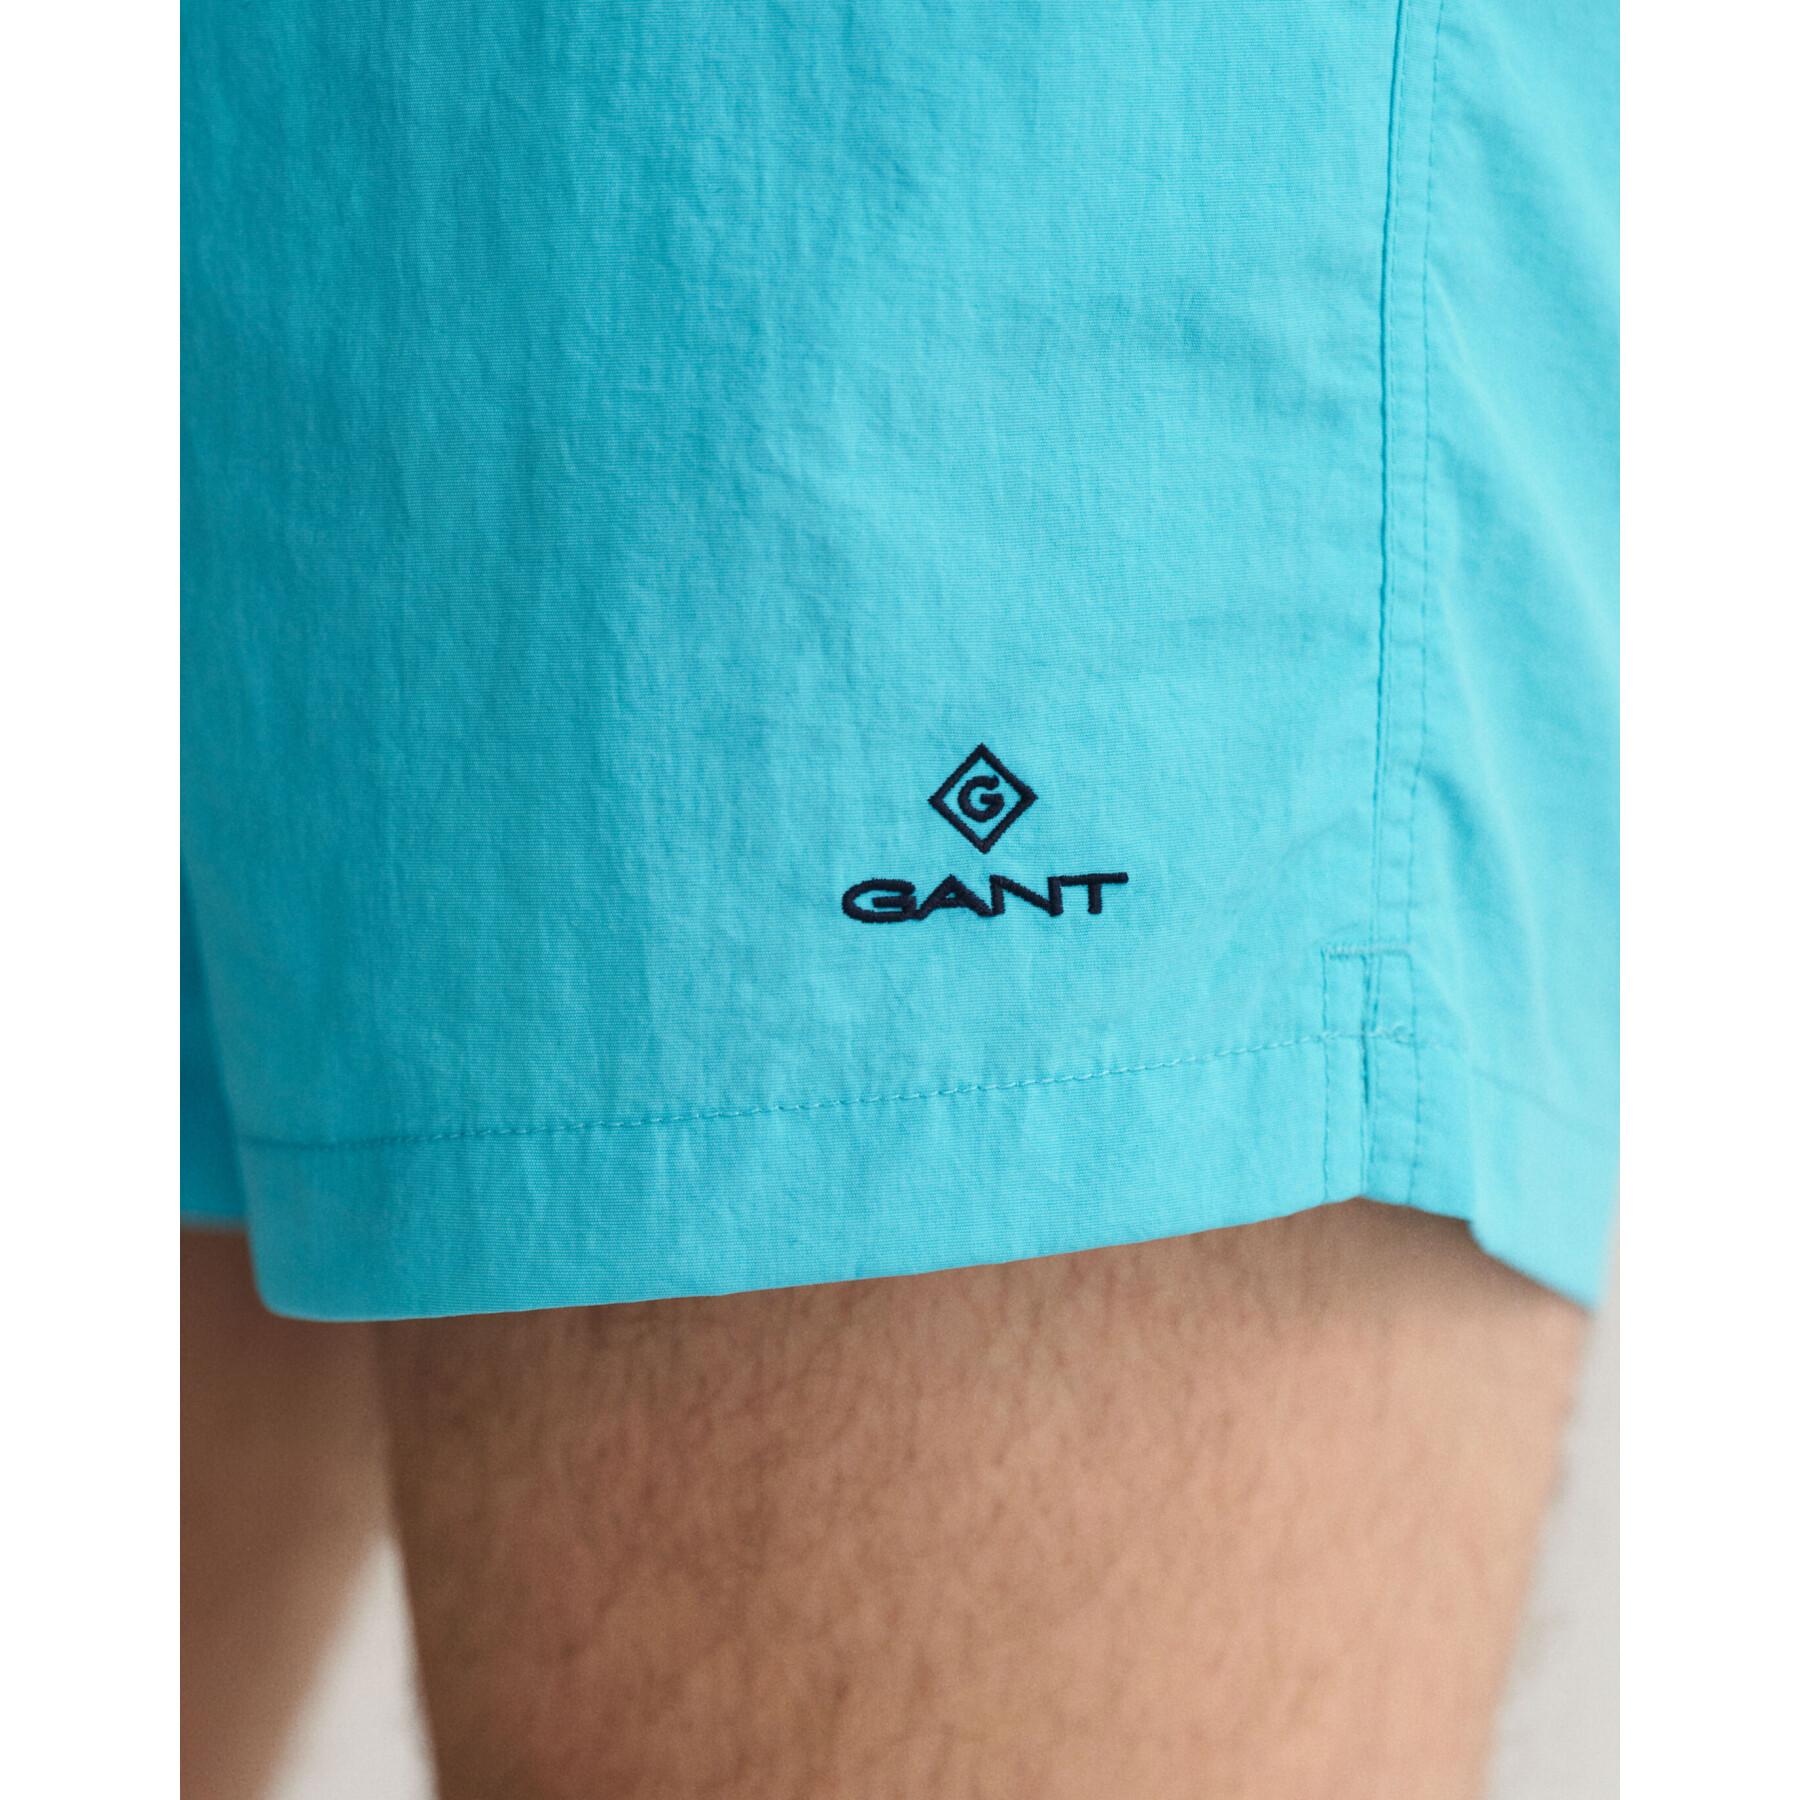 Calções de banho Gant Classic Fit